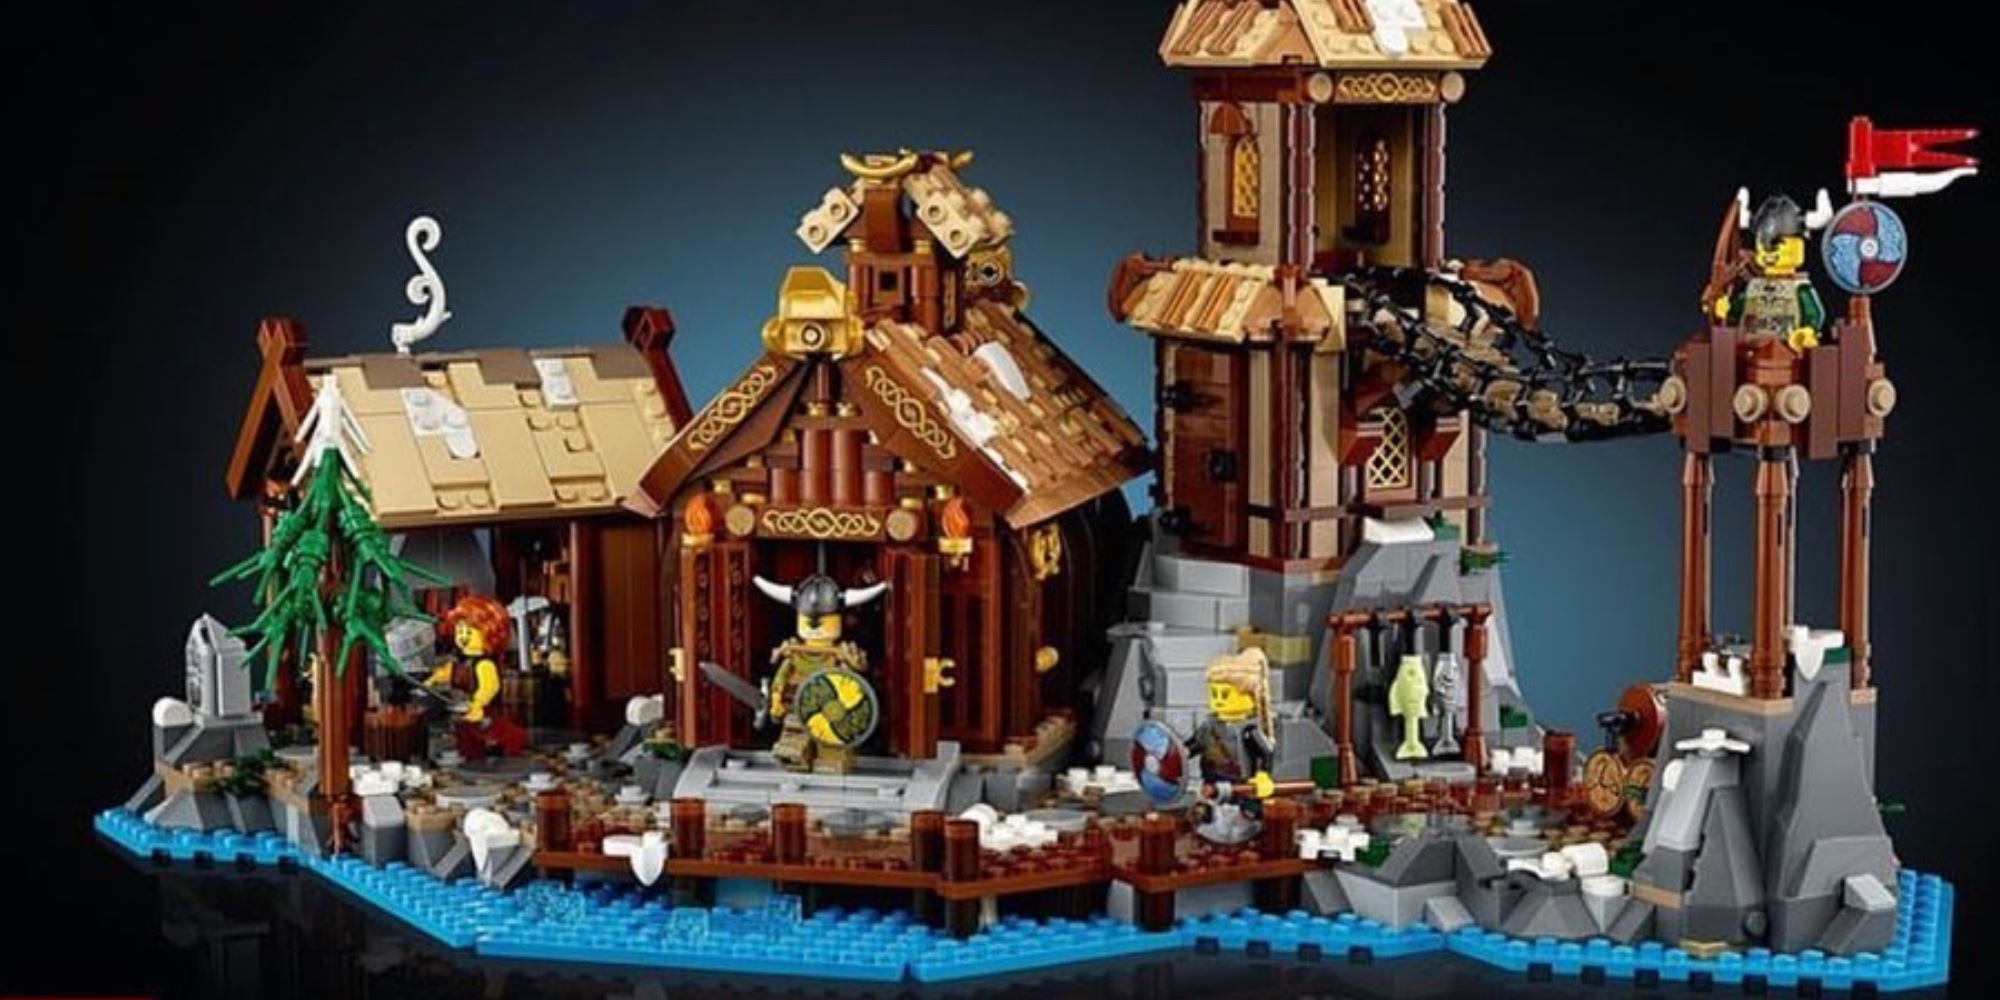 LEGO IDEAS - LEGO Viking Longship